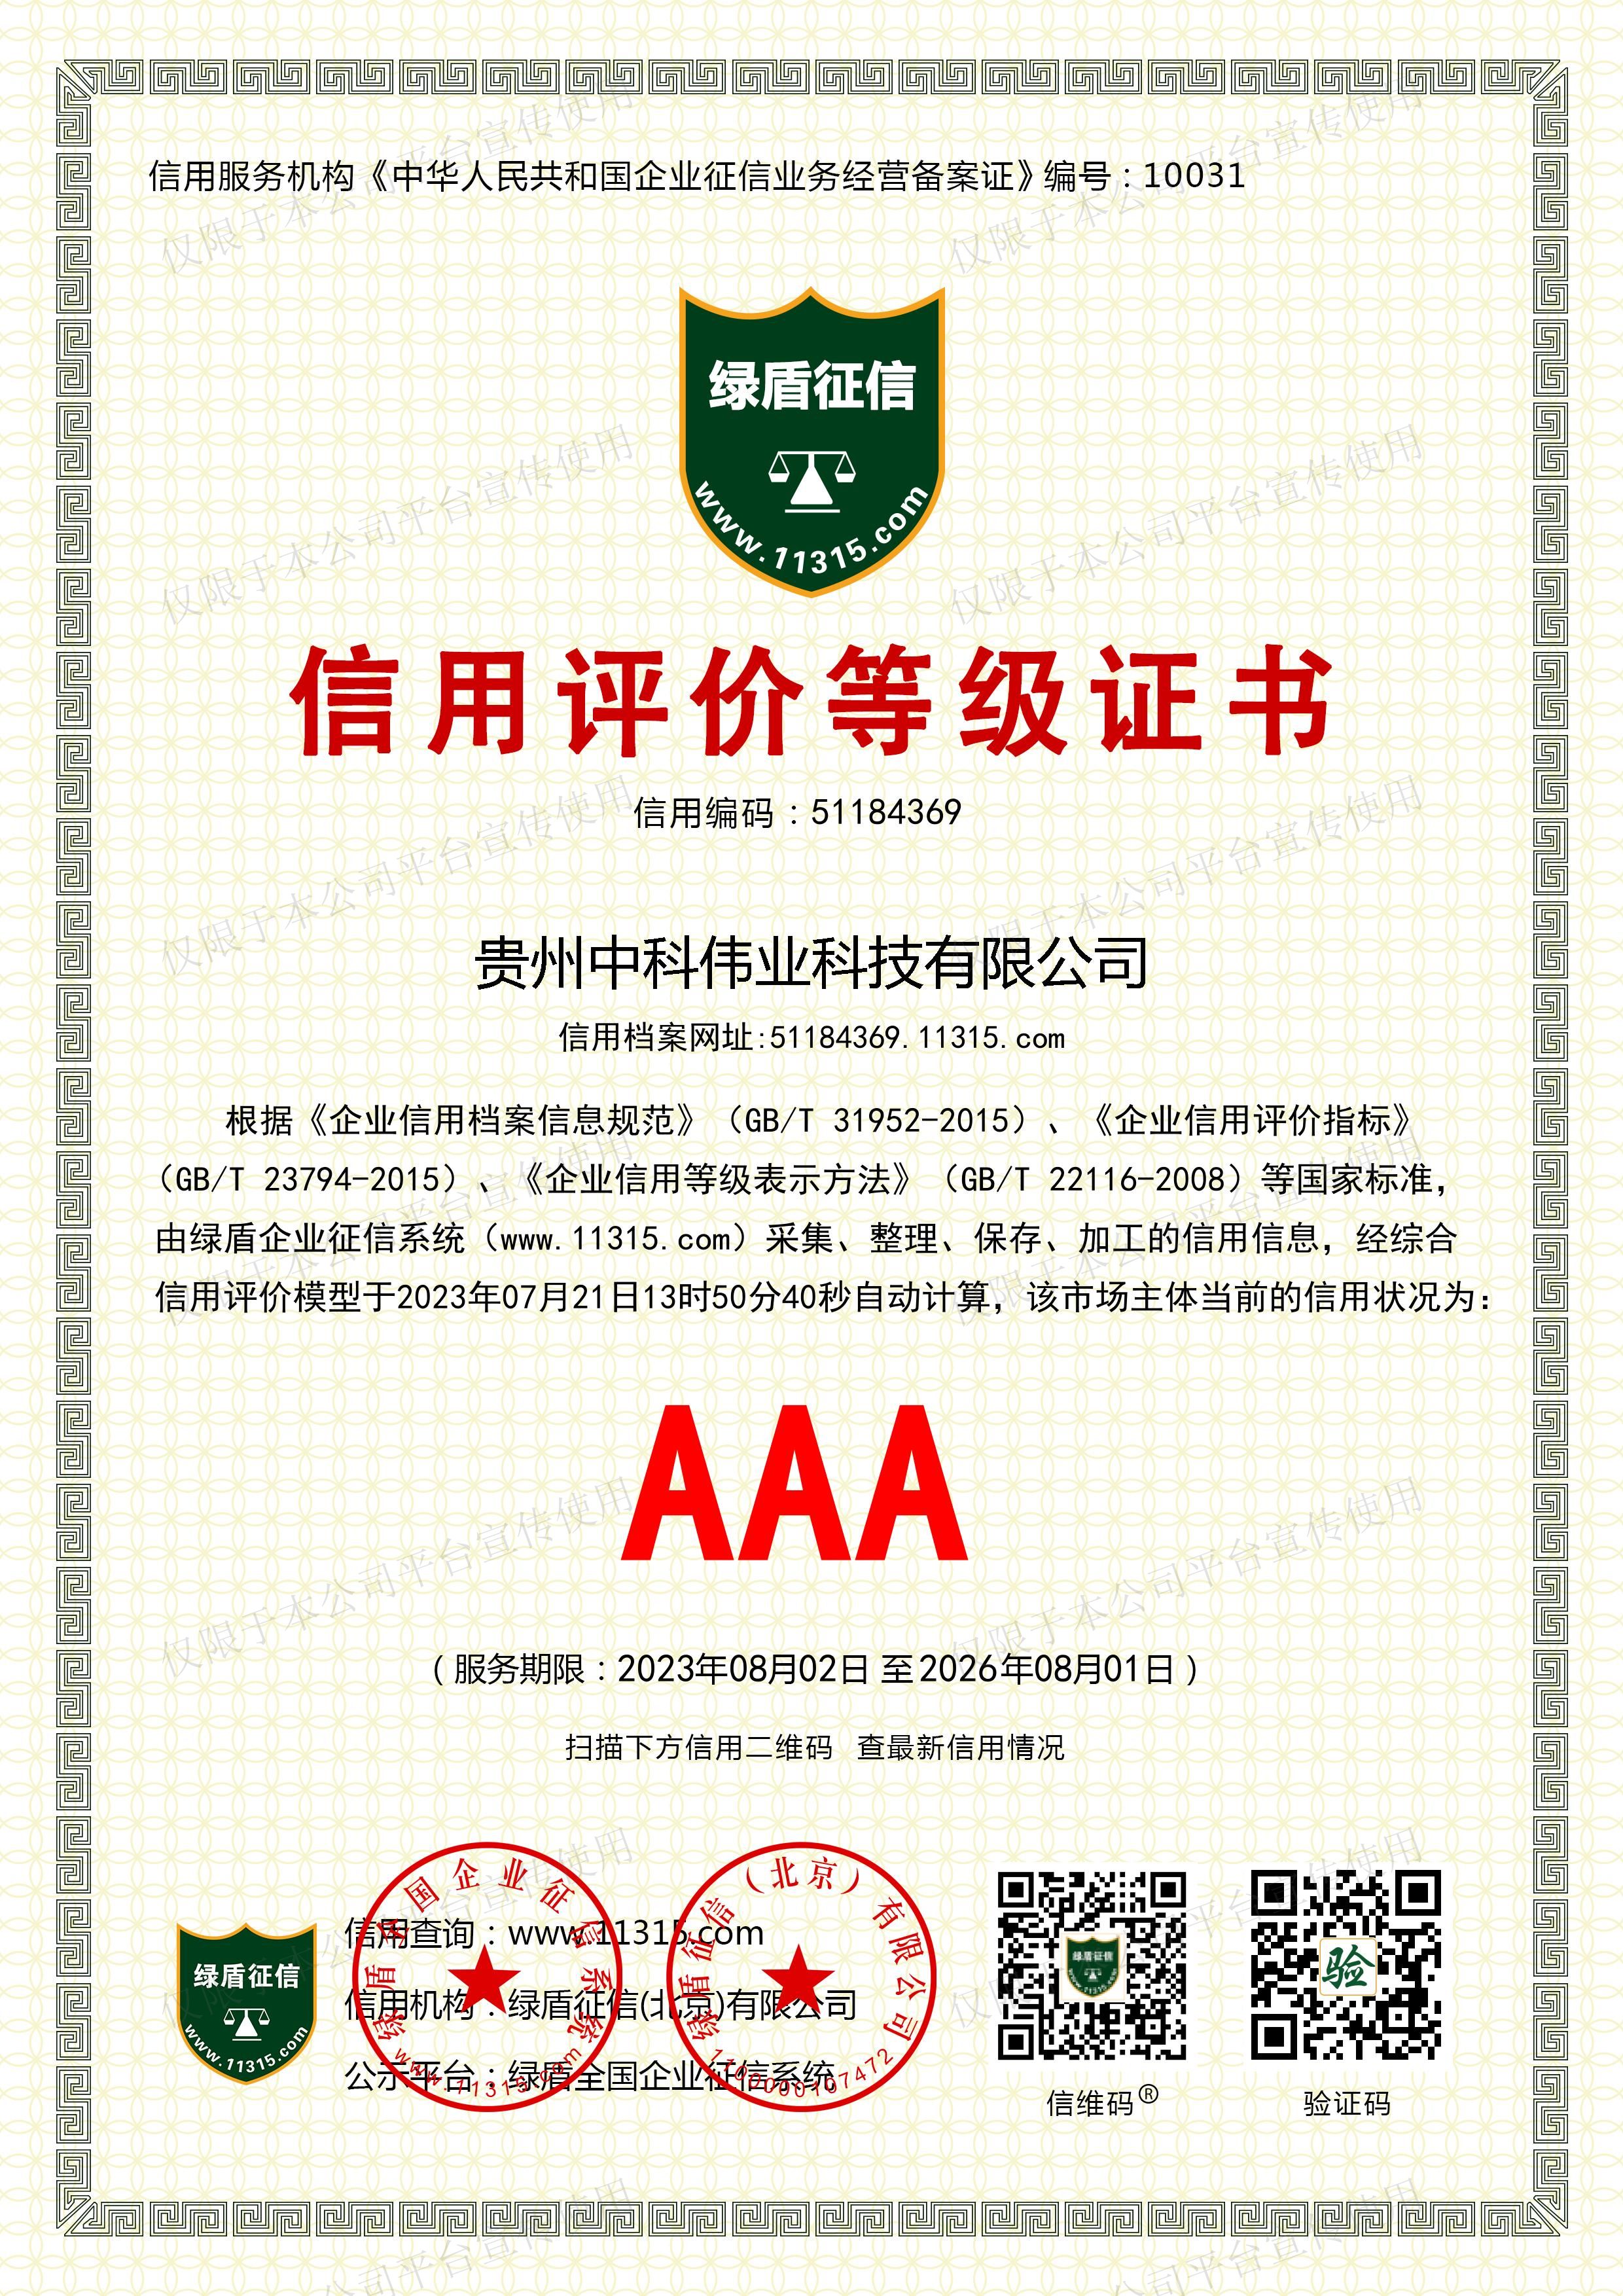 AAA信用证书